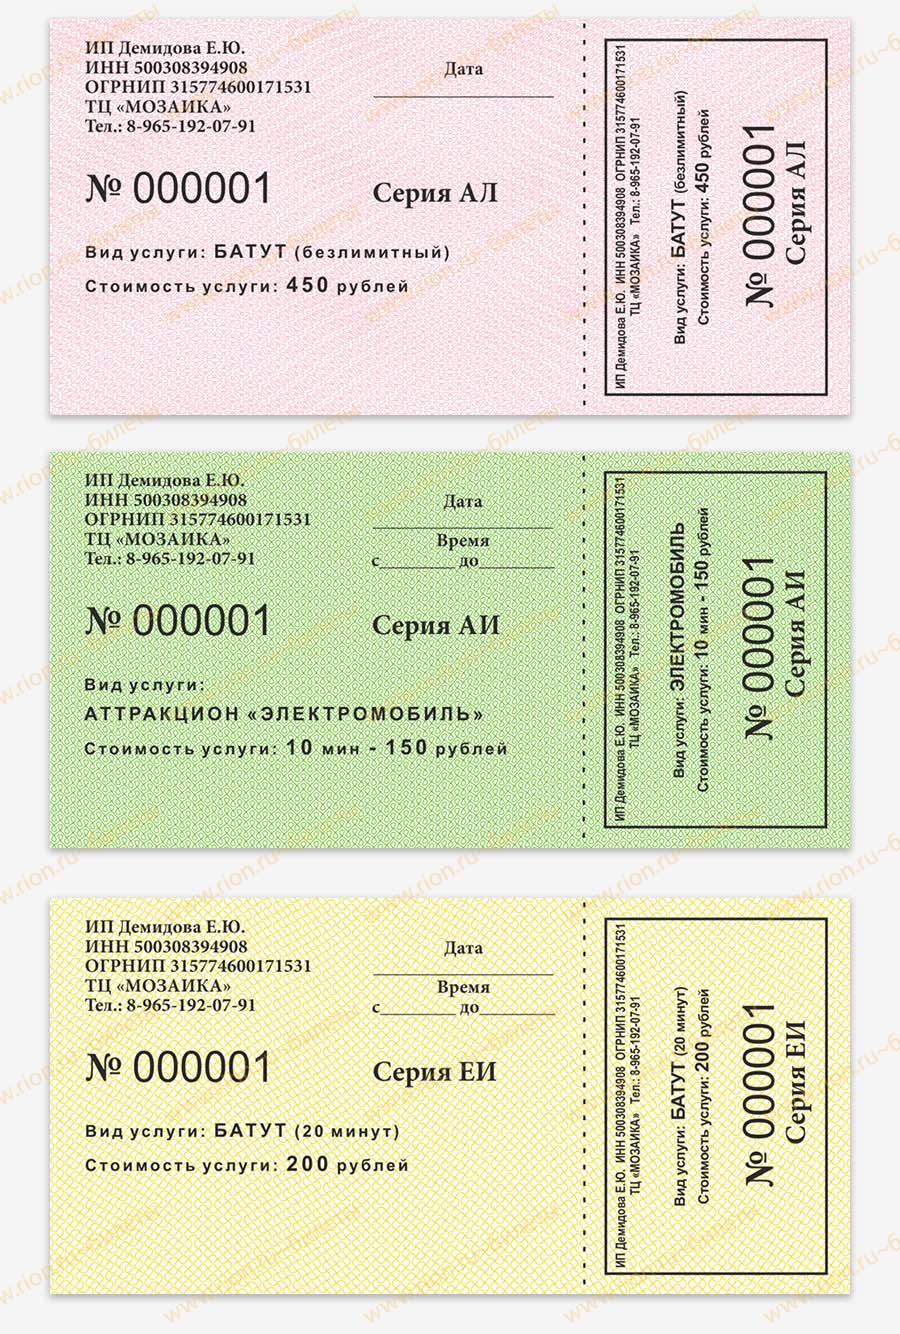 Разноцветные билеты на различные аттракционы ~ образец билета TS0016 ~ Билеты online ~ типография РИОН